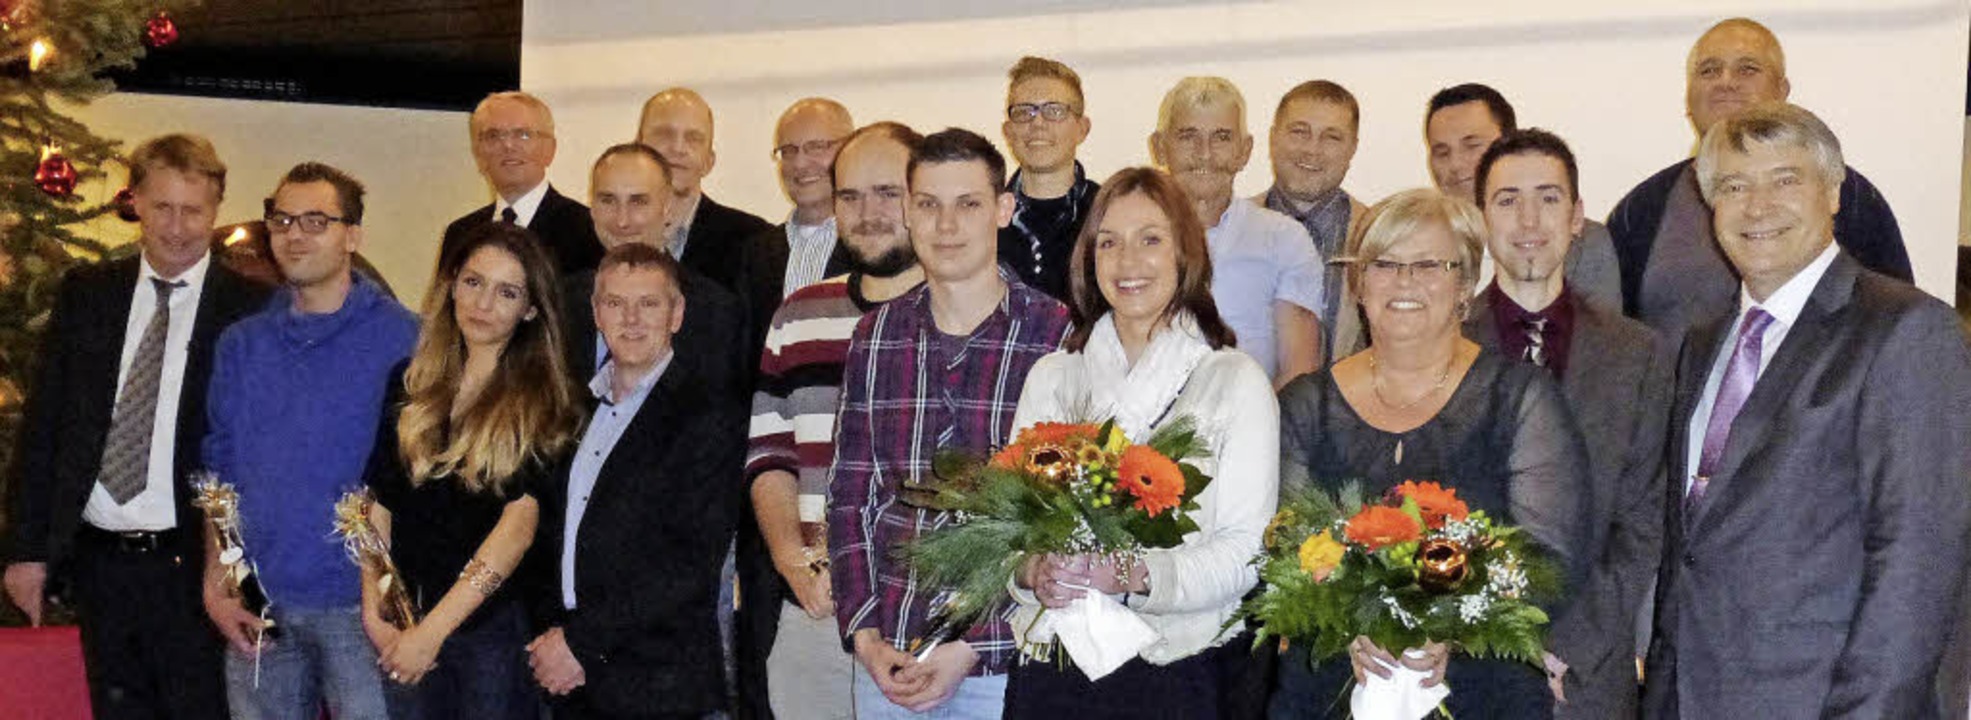 Der Badische Winzerkeller ehrte langjährige Mitarbeiterinnen und Mitarbeiter.  | Foto: Privat